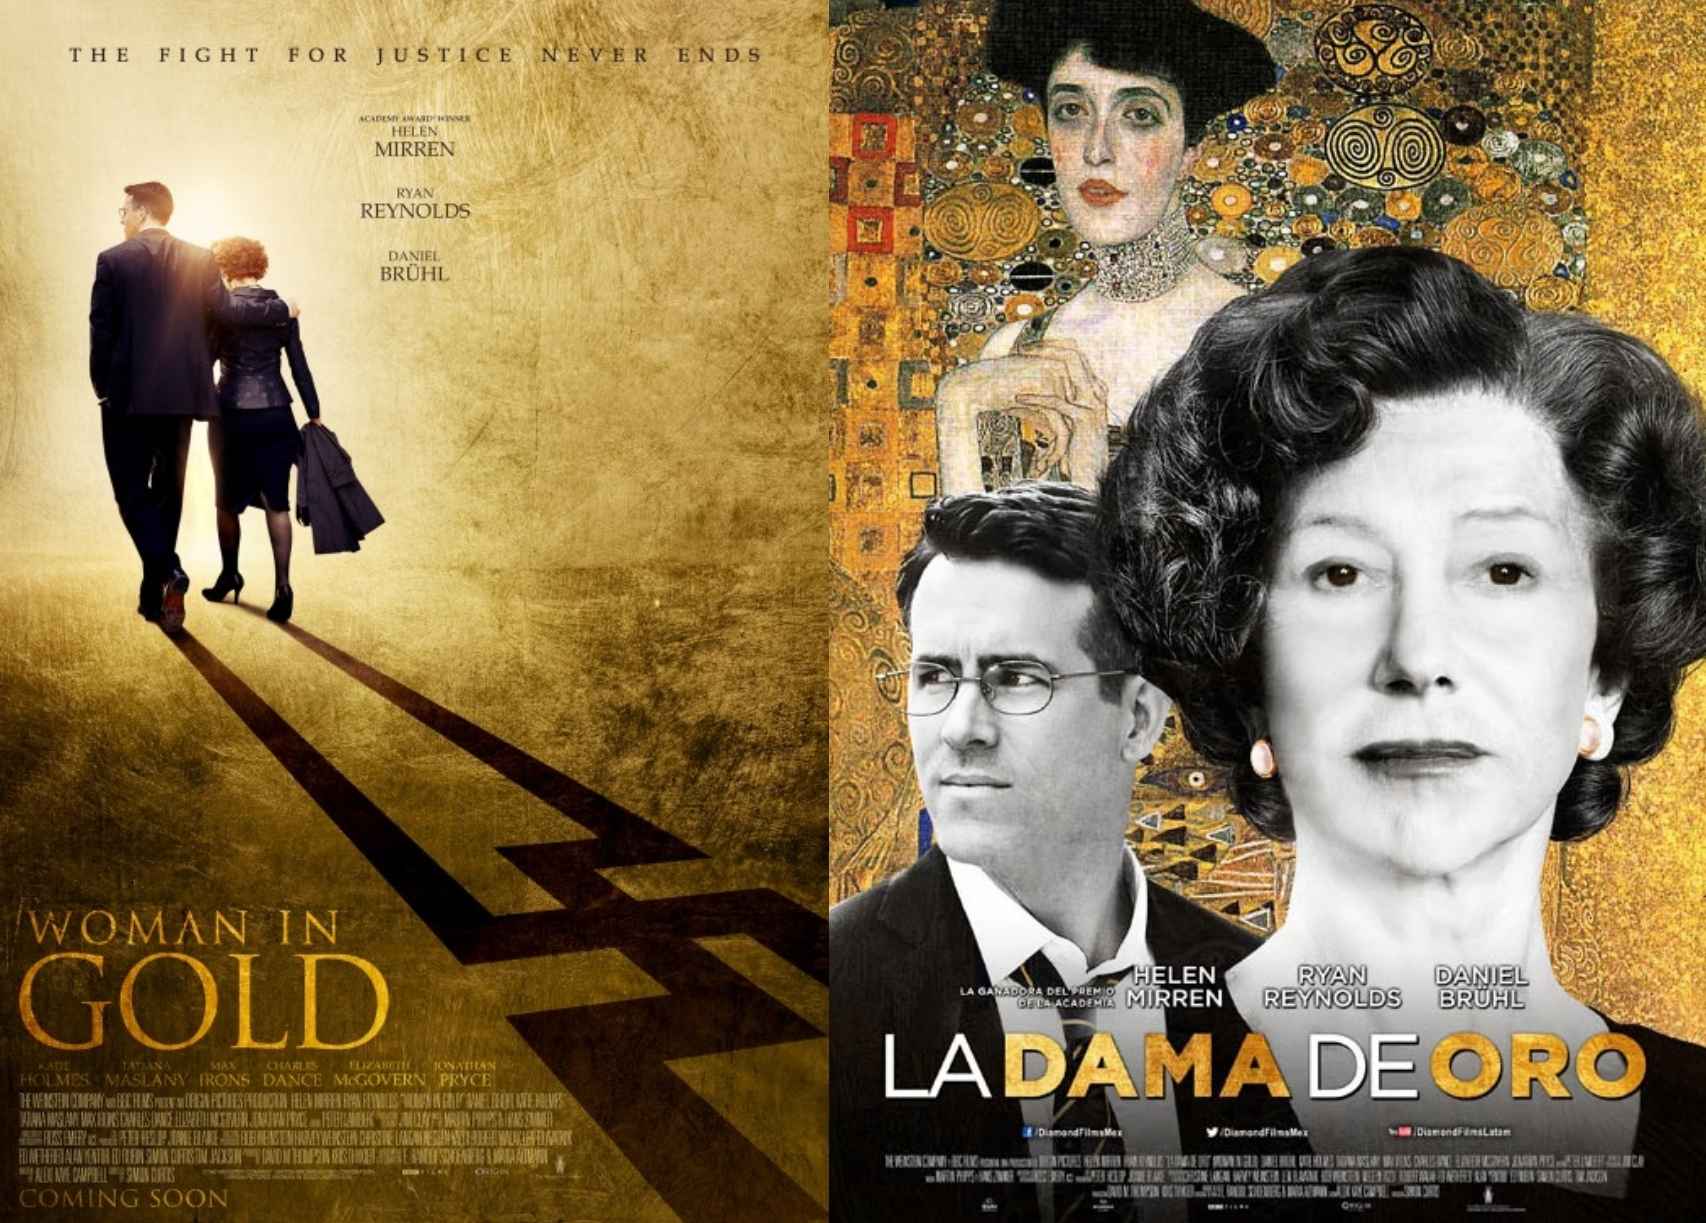 Los carteles de la película, en inglés y español.